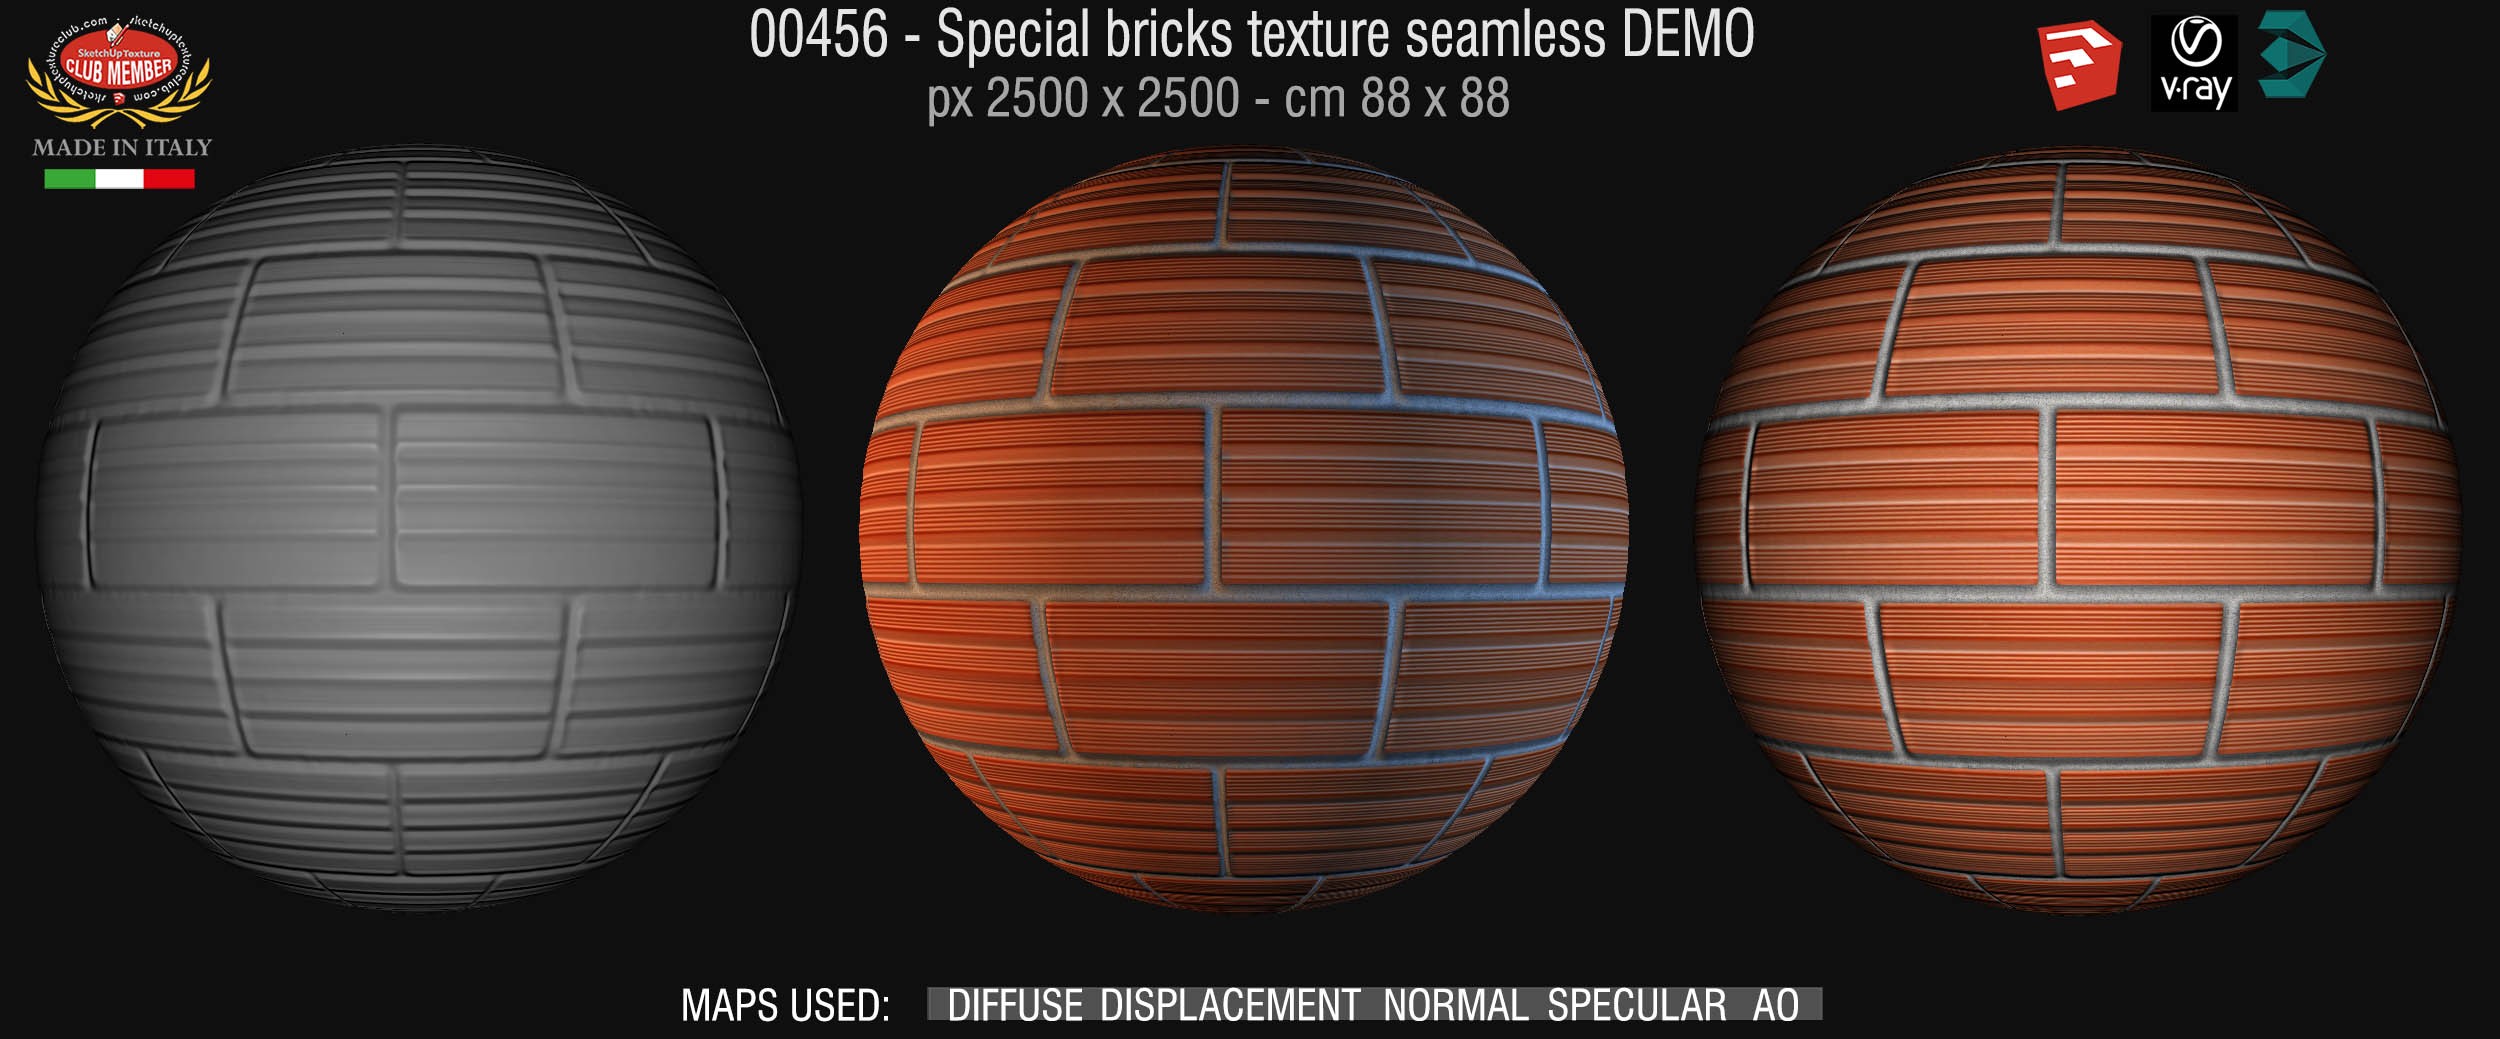 00456 Special bricks texture seamless + maps DEMO